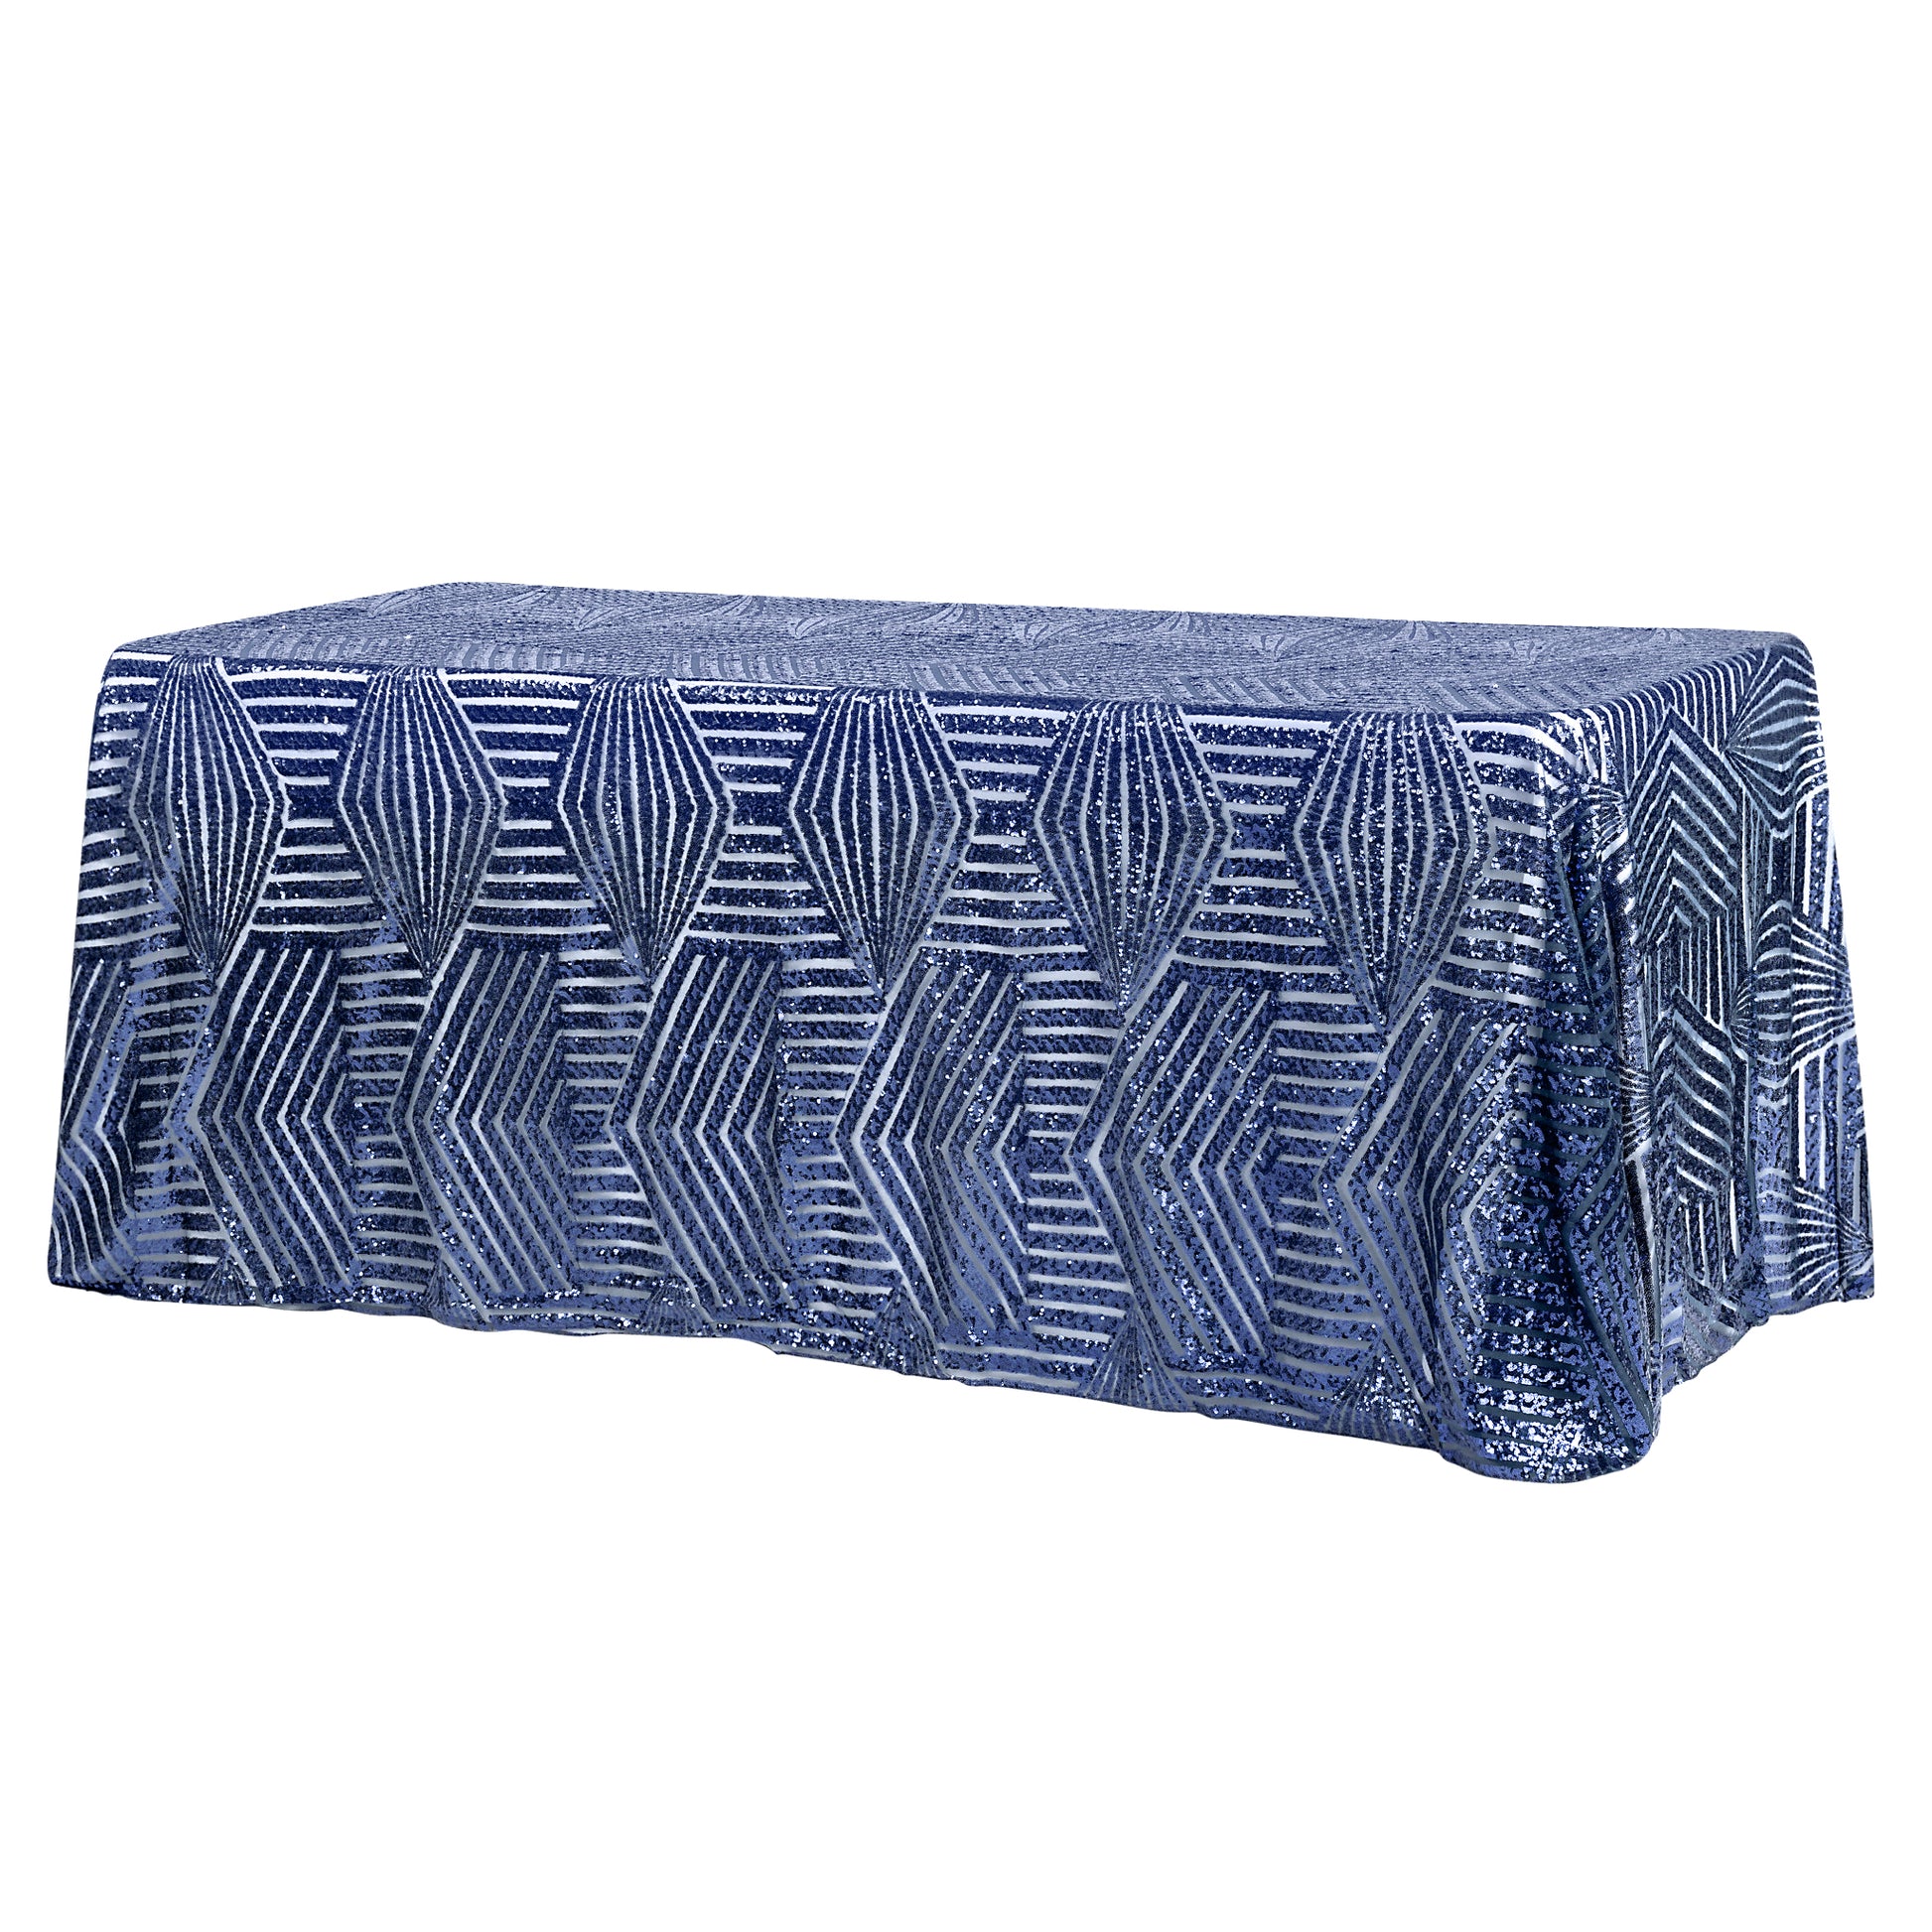 Geometric Glitz Art Deco Sequin Tablecloth 90"x132" Rectangular - Navy Blue - CV Linens